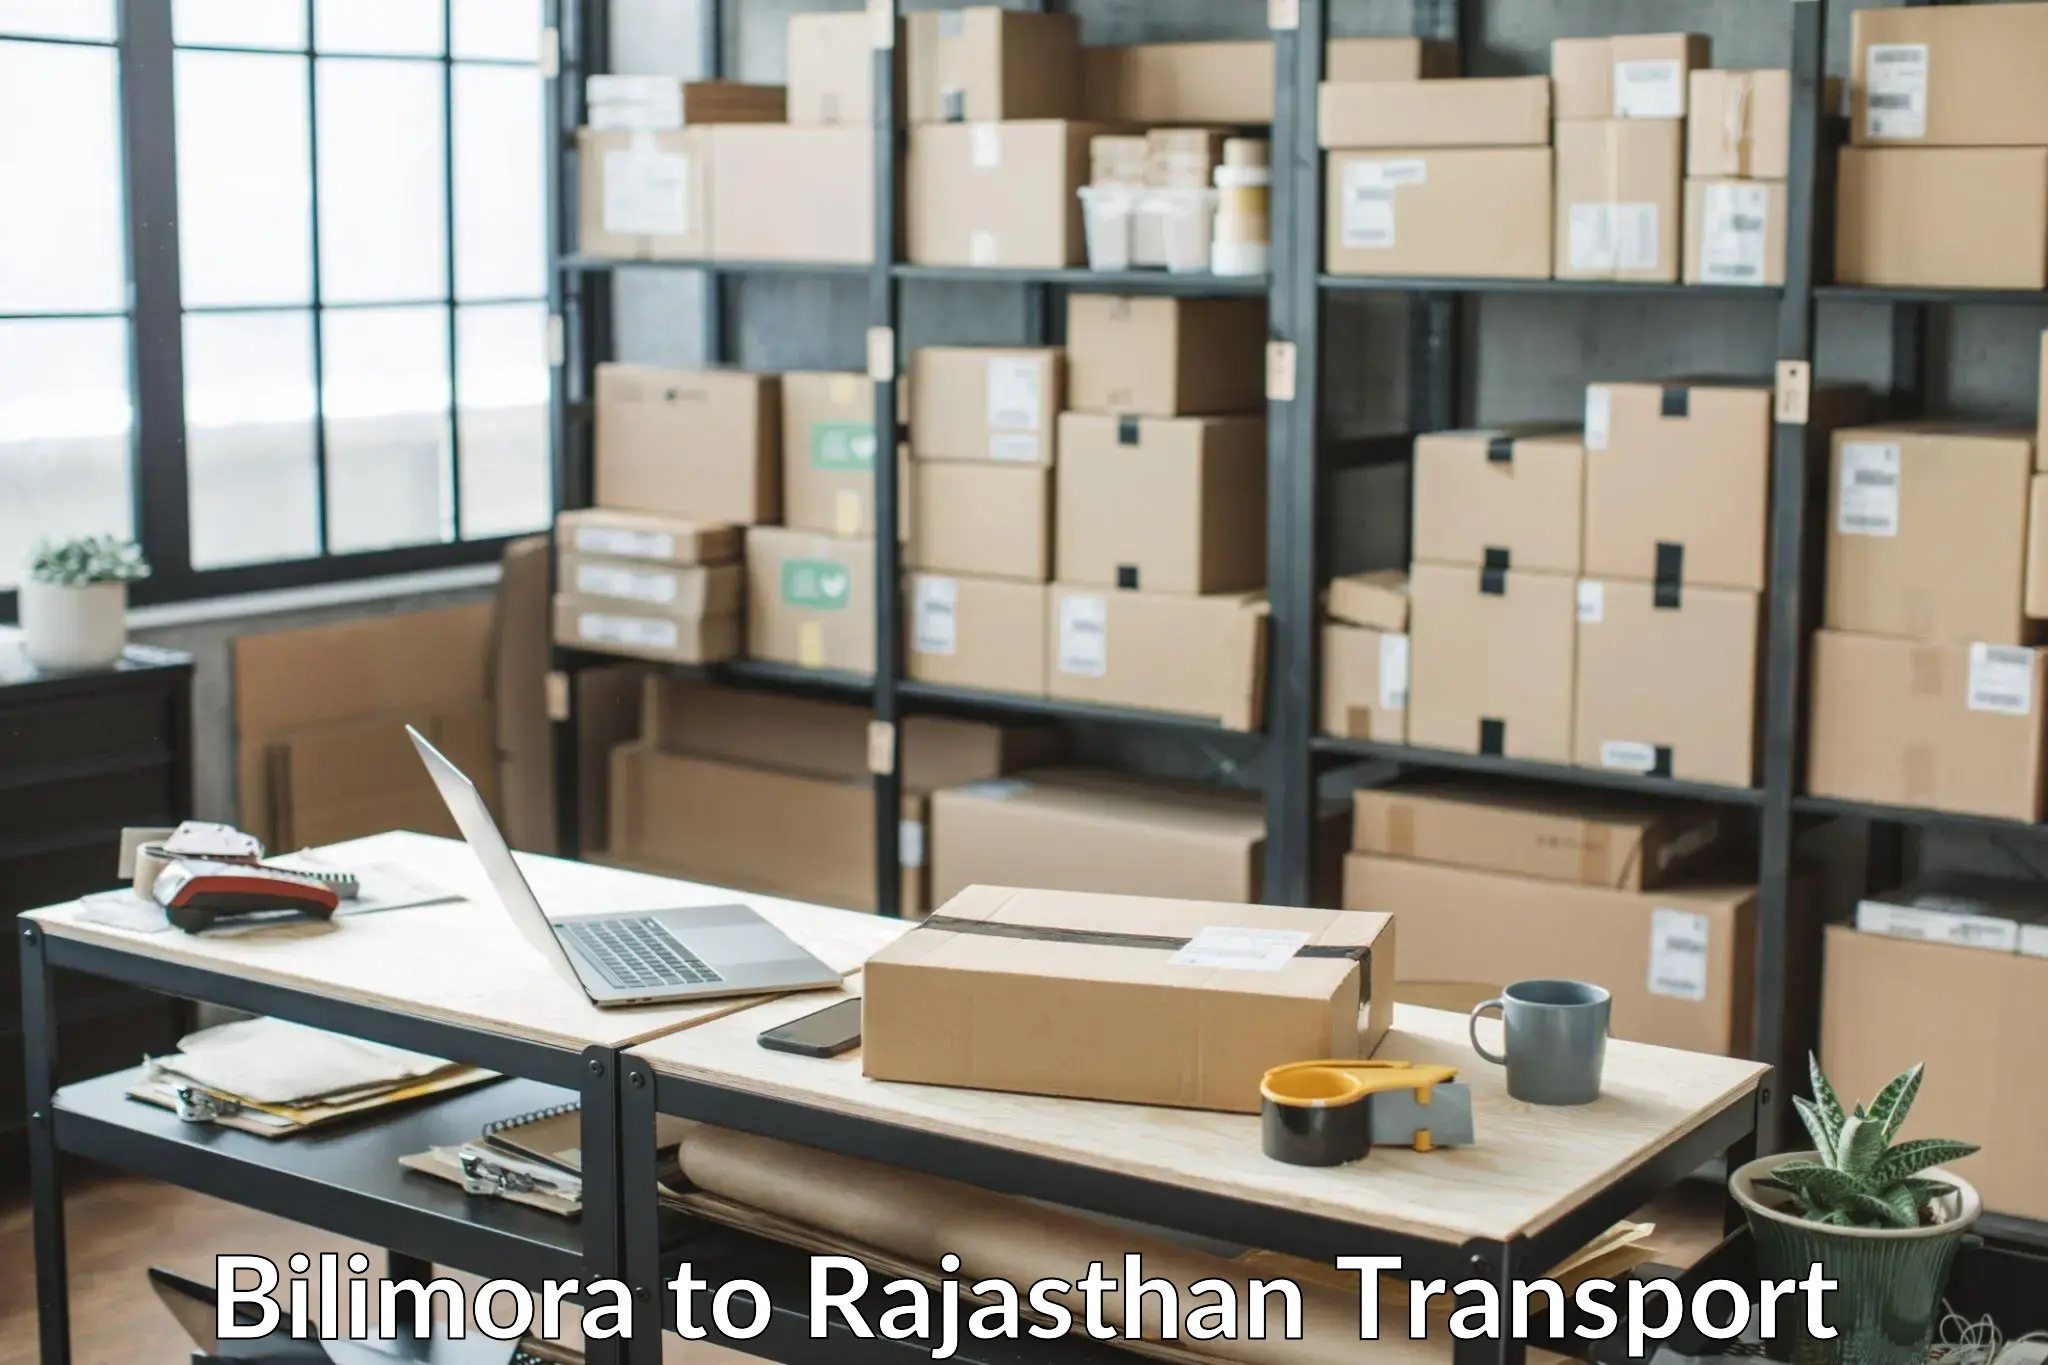 Truck transport companies in India in Bilimora to Makrana